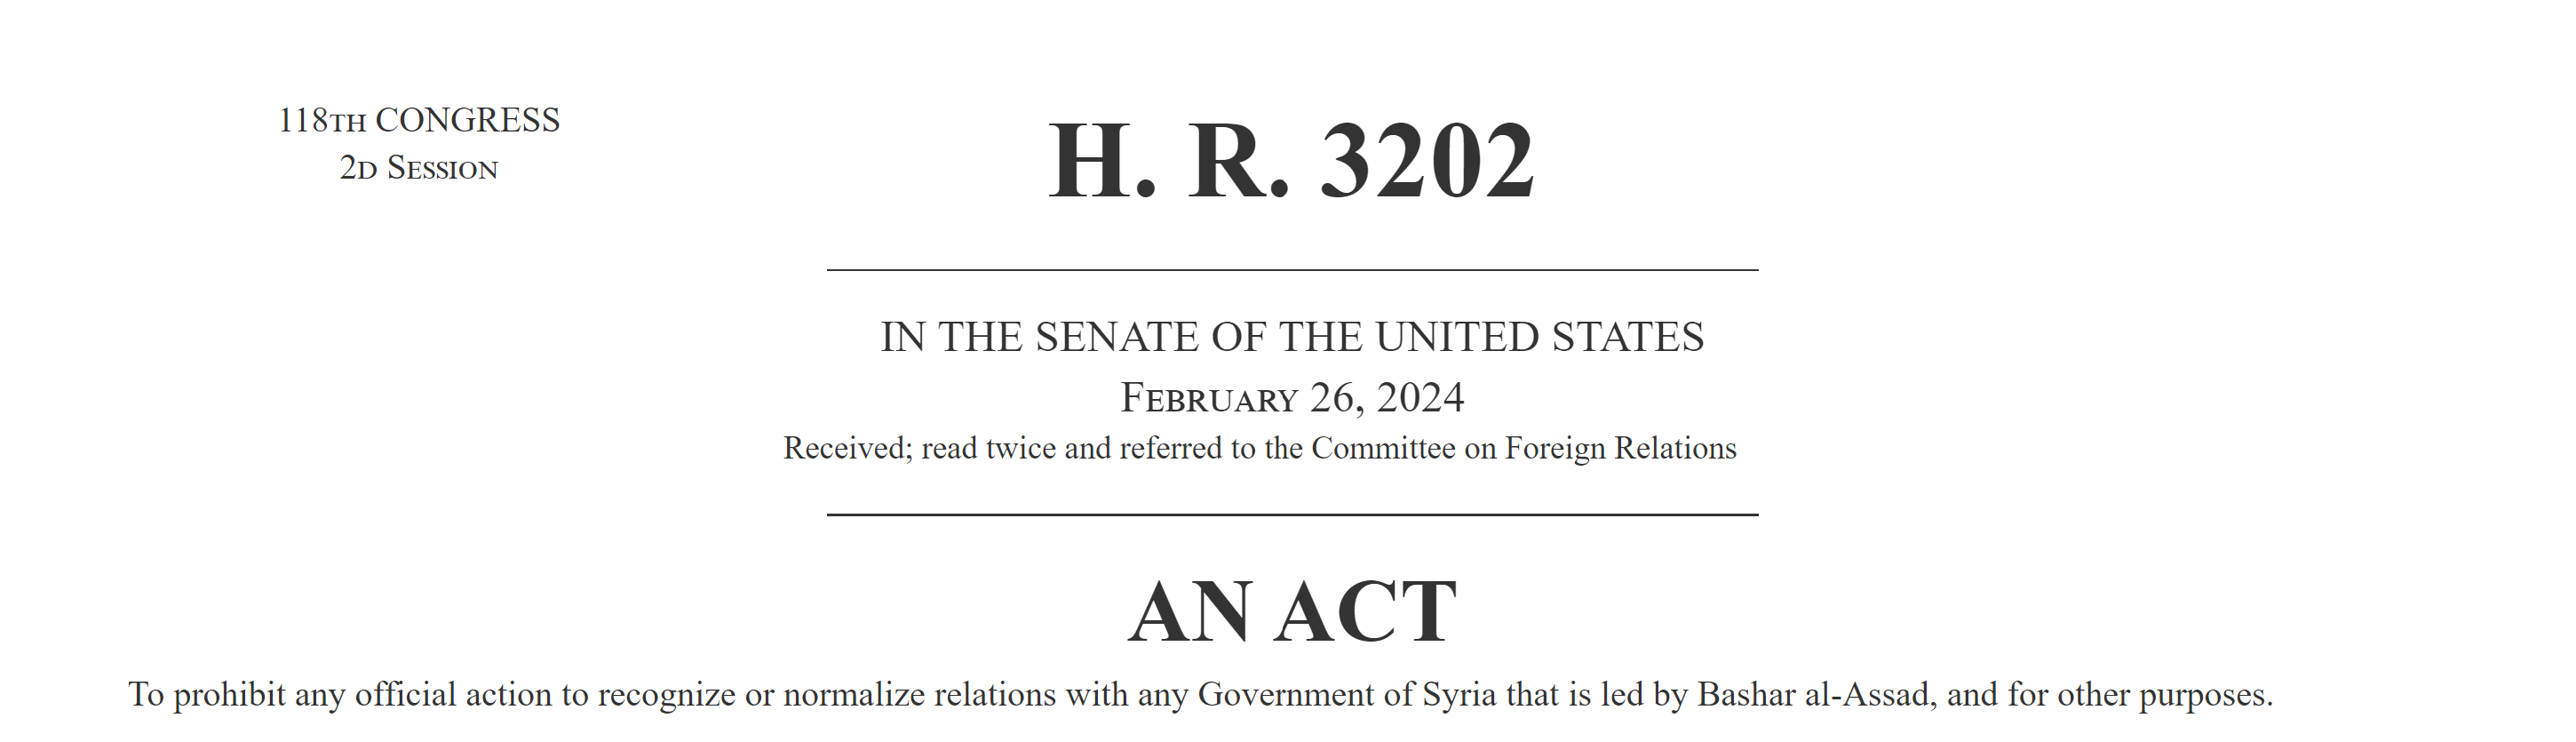 مجلس النواب الأمريكي يوافق على مشروع قانون "مناهضة التطبيع مع نظام الأسد"